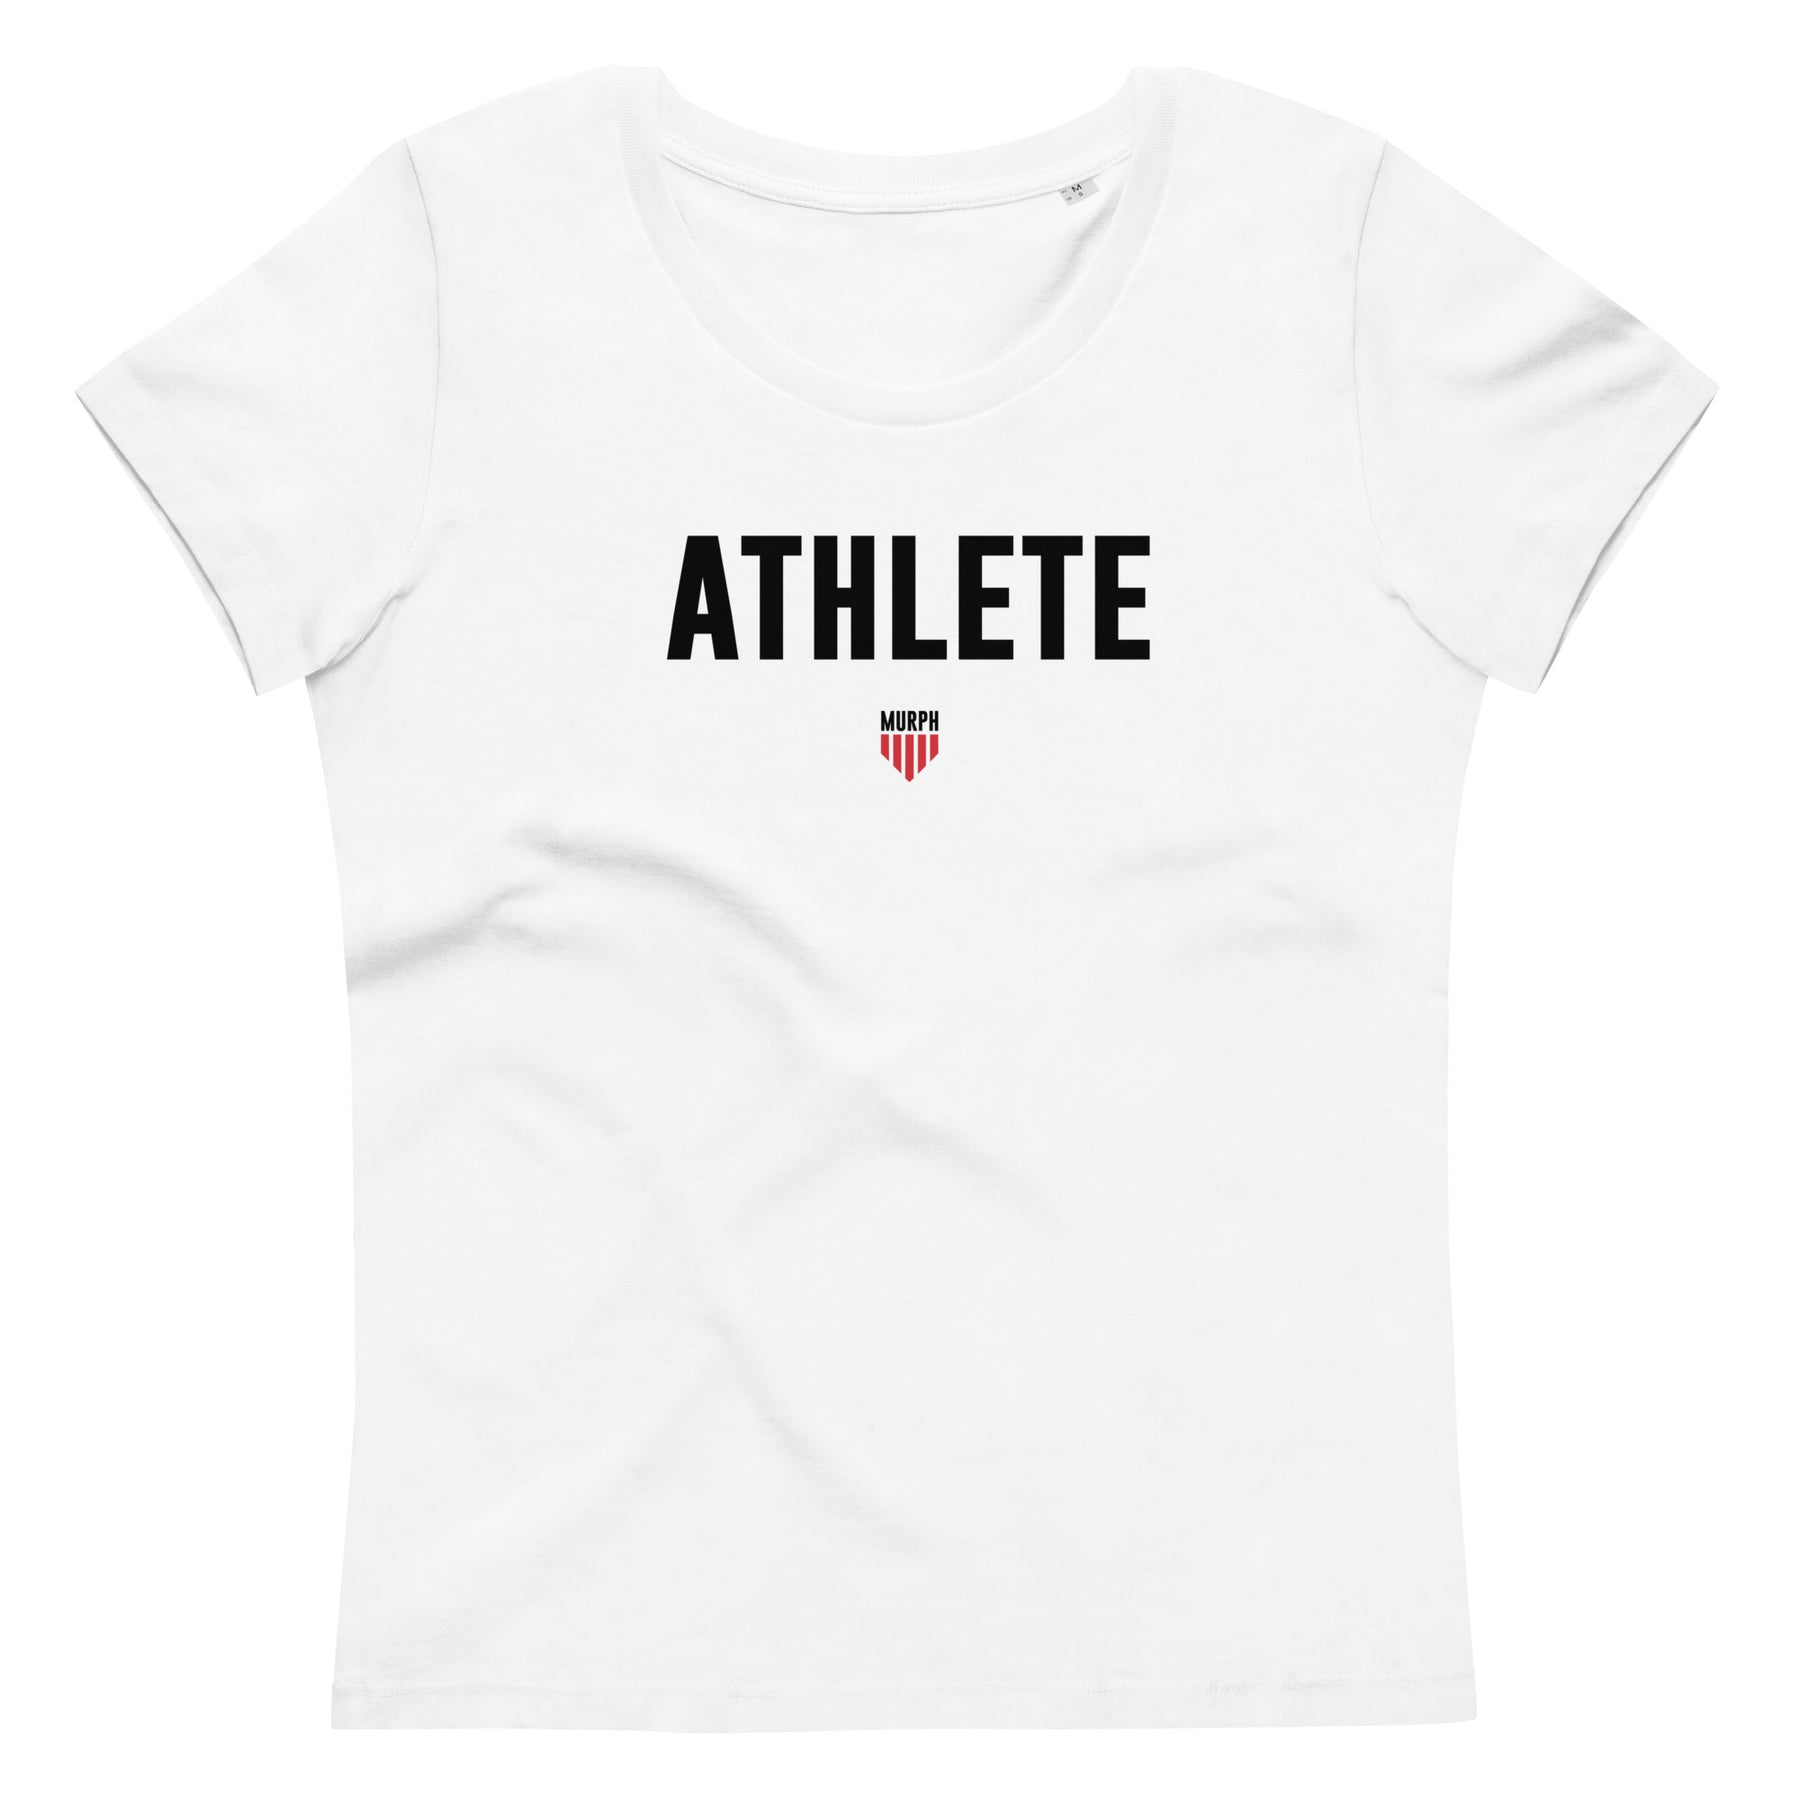 T-shirt - Athlete Murph